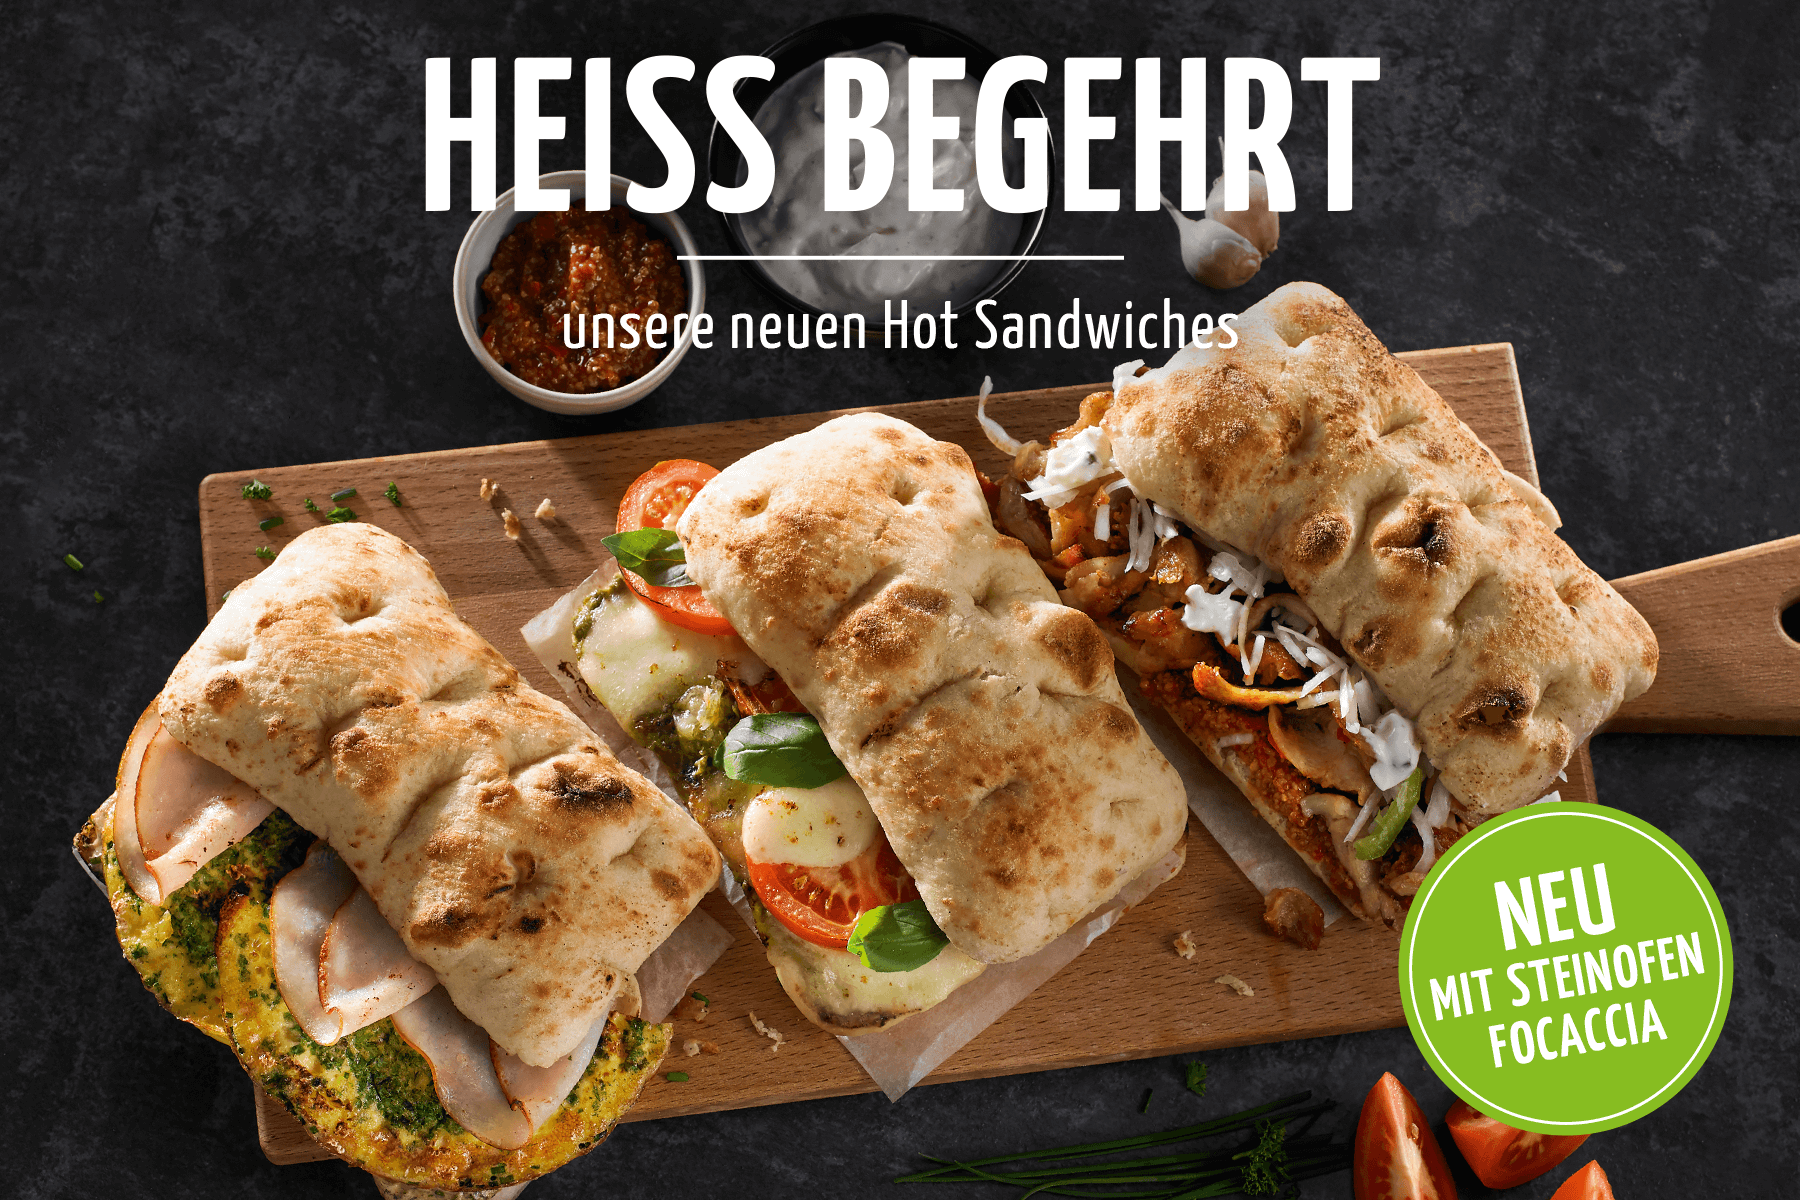 HEISS BEGEHRT - die neuen Hot Sandwiches mit Steinofen-Focaccia